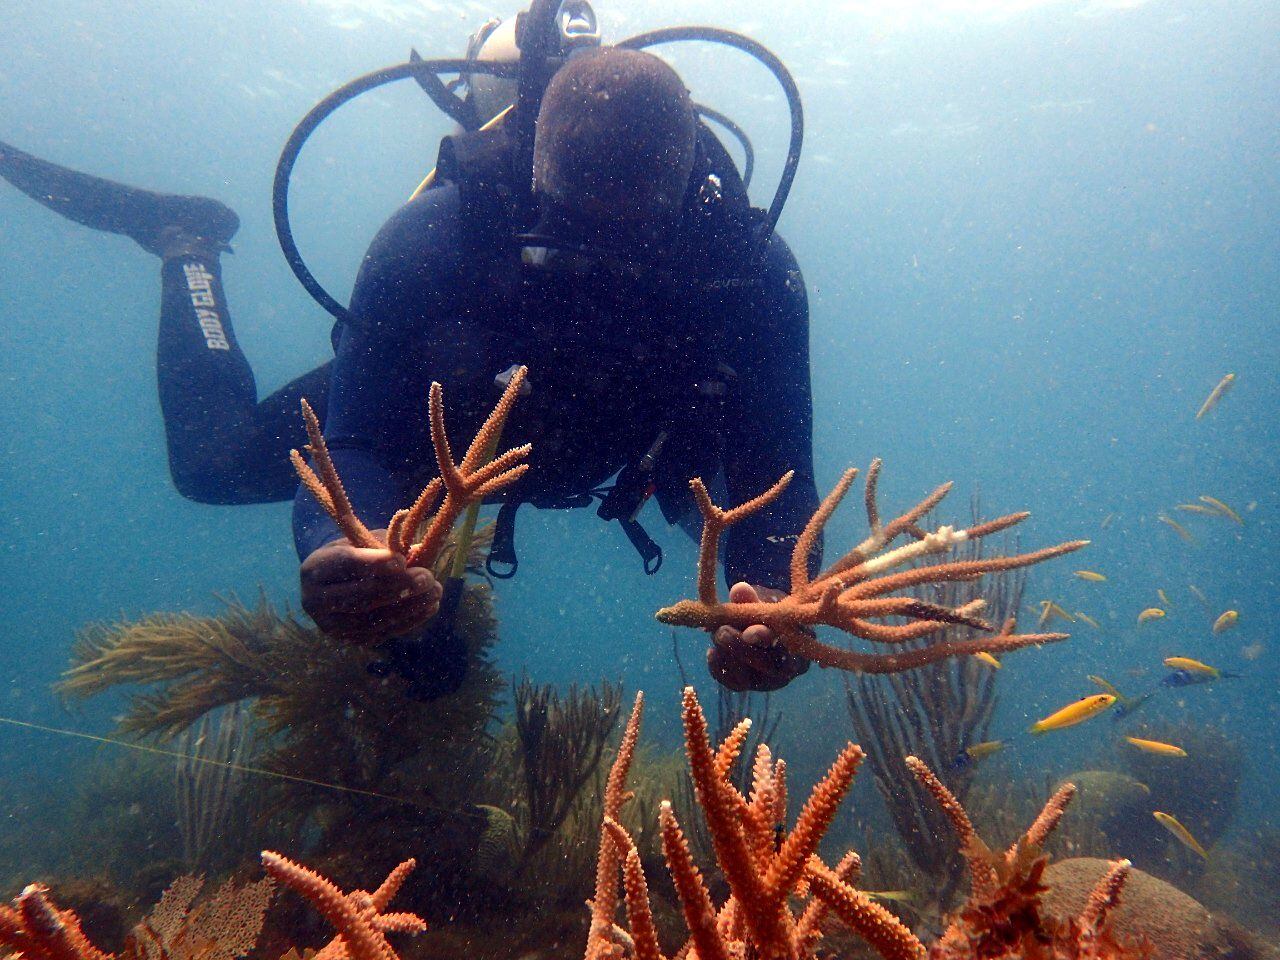 Una de las estrategias de conservación de arrecifes coralinos es el buceo responsable, una práctica que permite identificar posibles problemas de salud de estos ecosistemas.